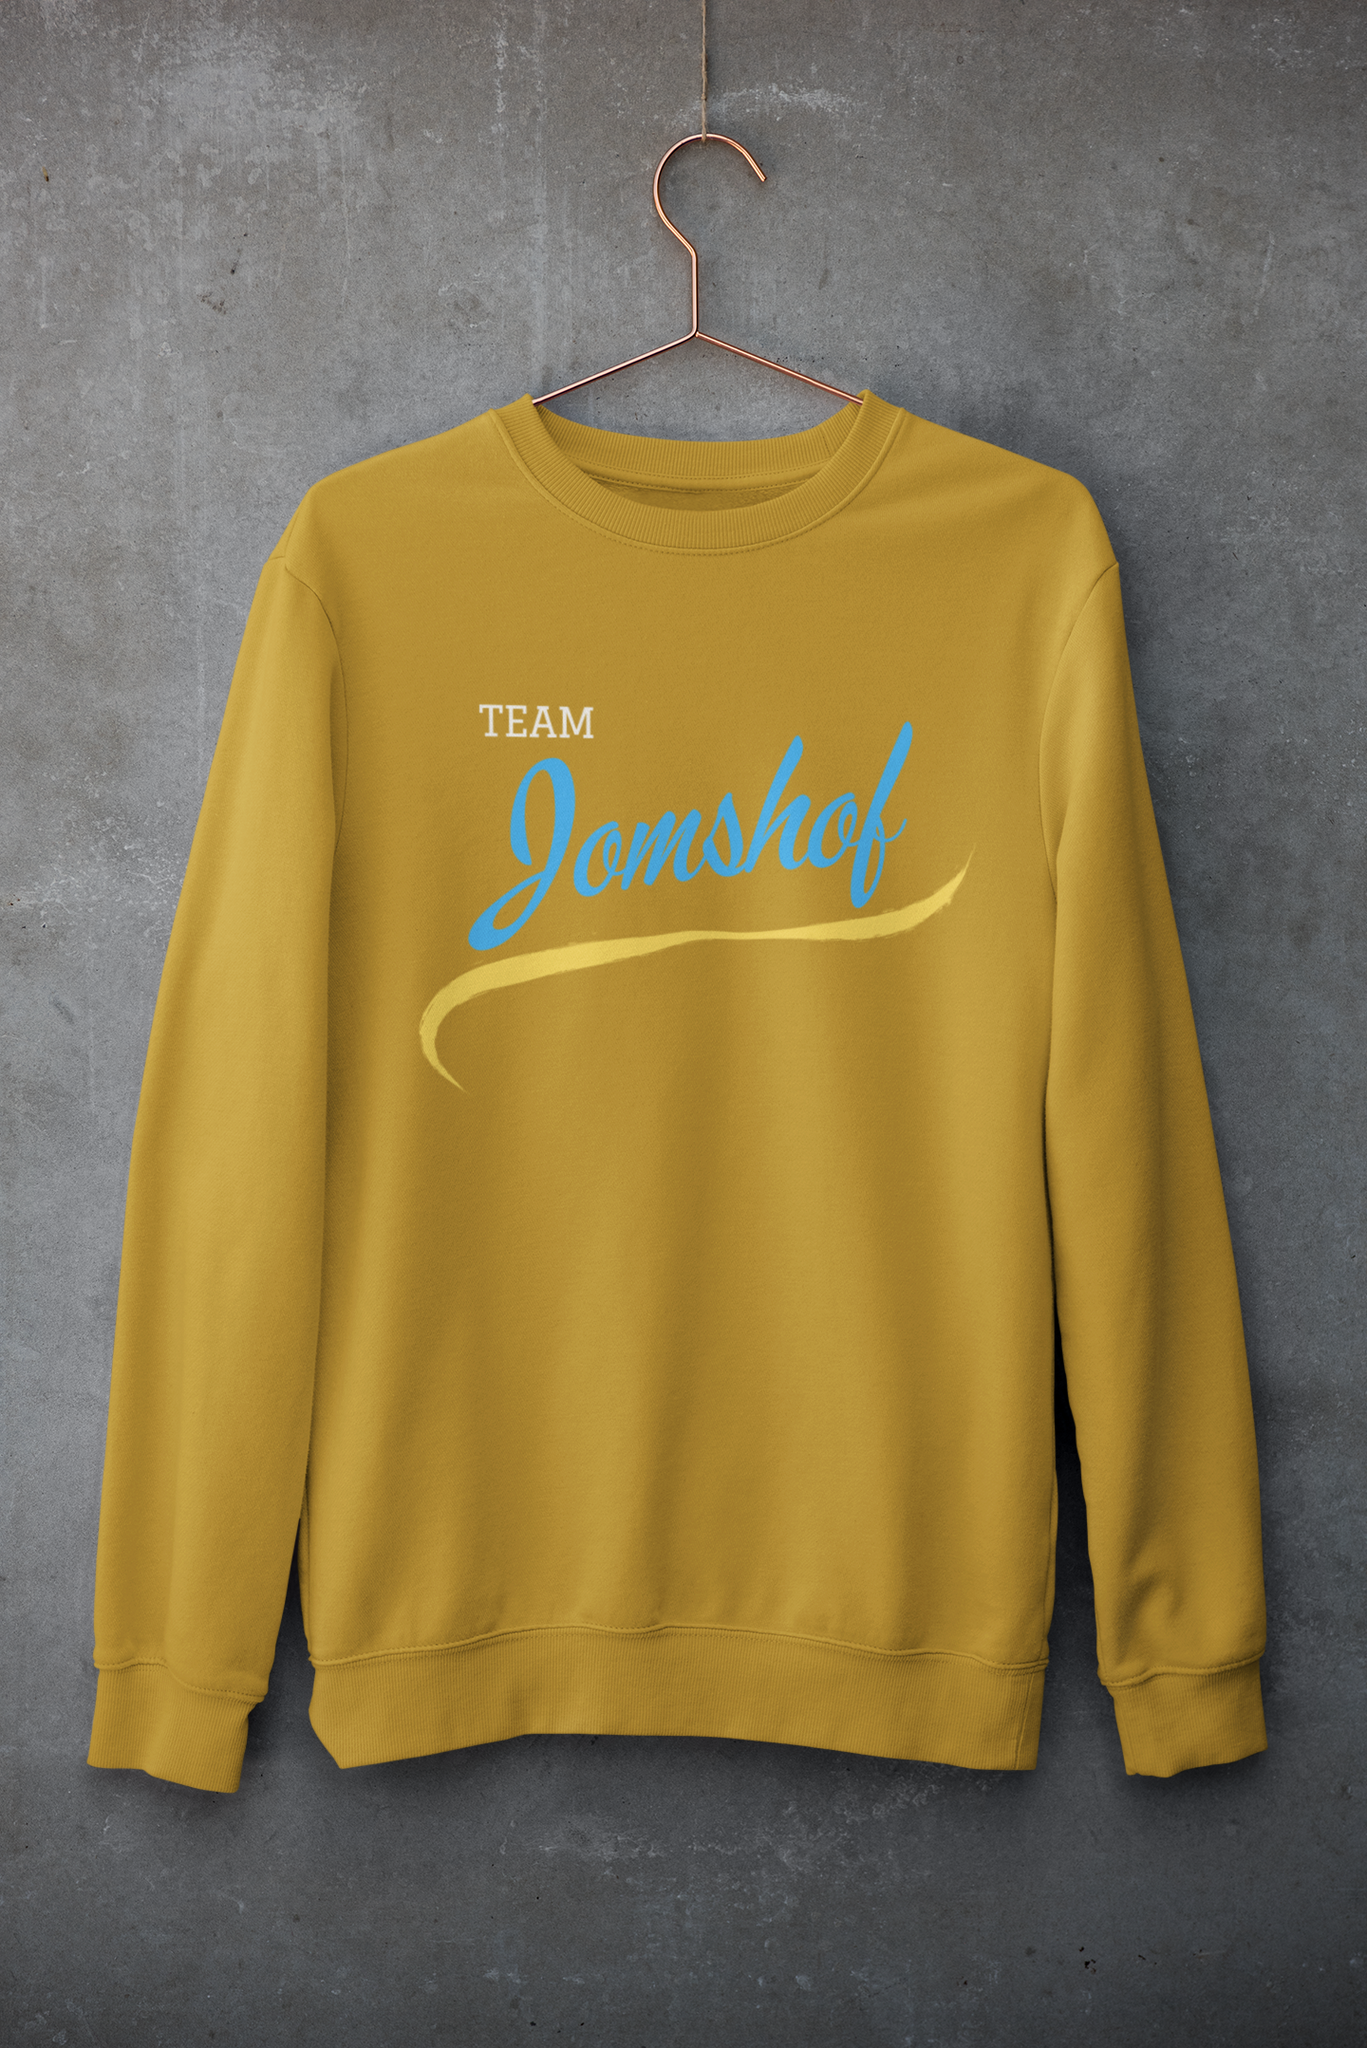 Team Jomshof Sweatshirt Unisex